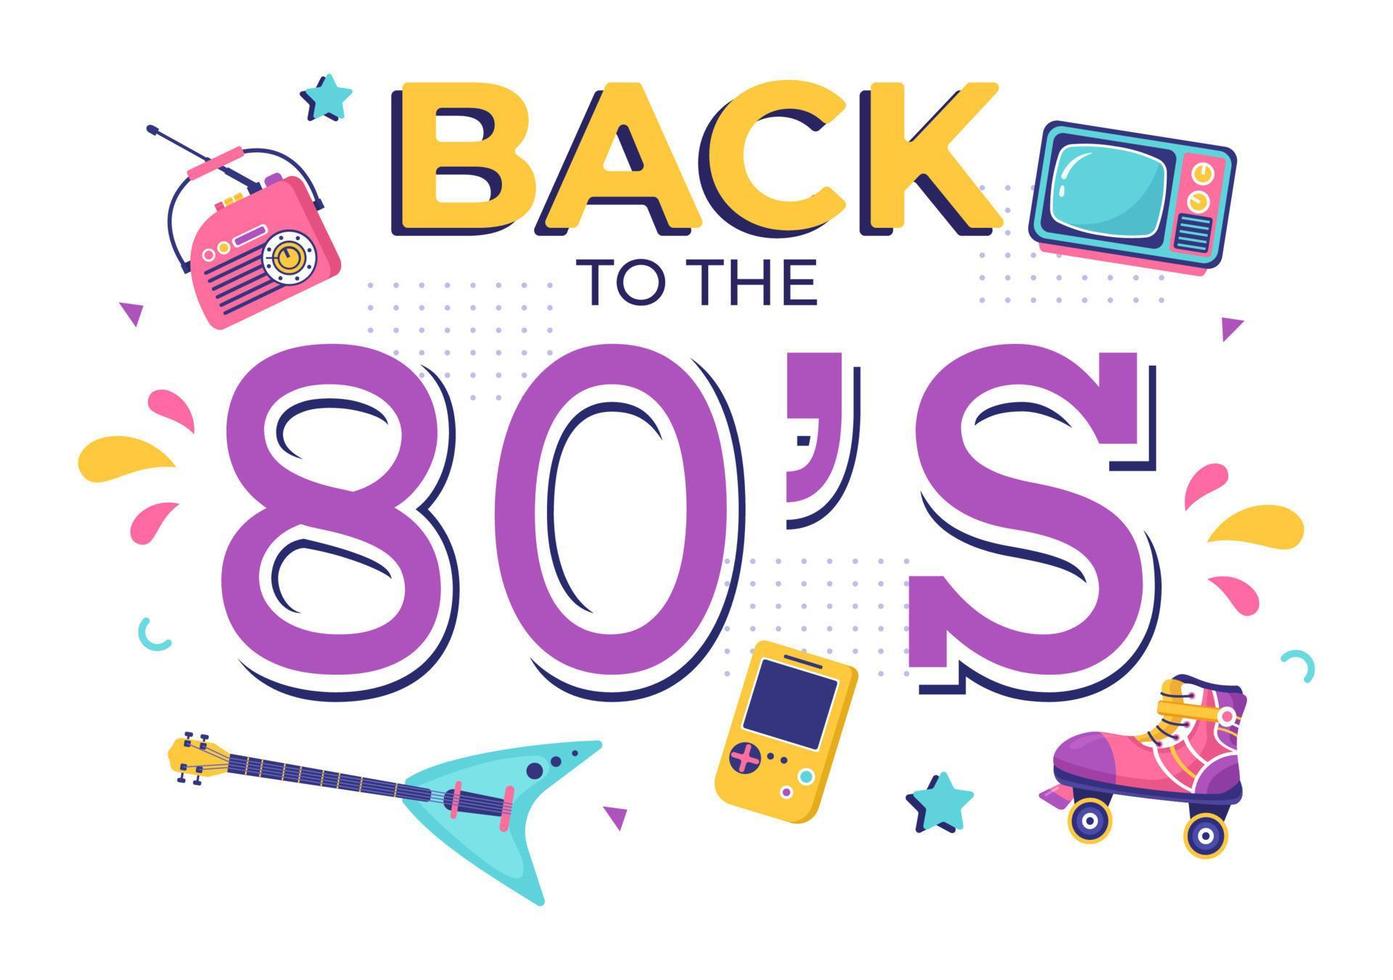 Illustrazione del fondo del fumetto della festa degli anni '80 con musica retrò, lettore di cassette radiofonico del 1980 e discoteca nel design vecchio stile vettore